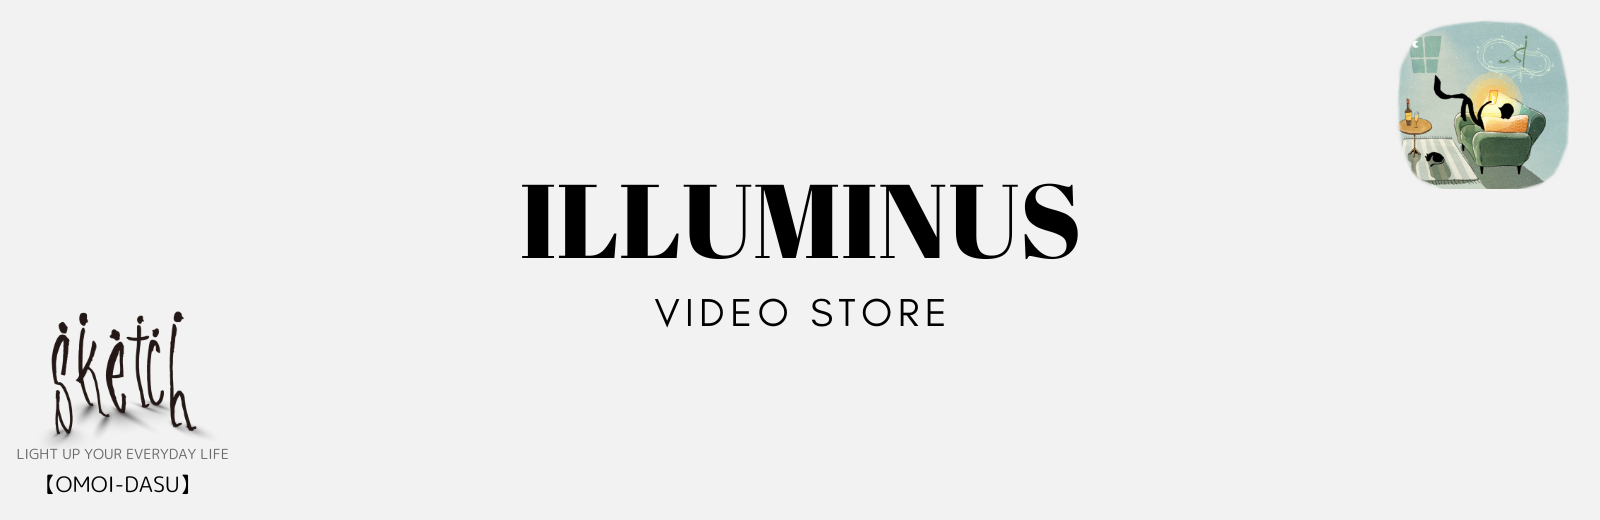 ILLUMINUS VIDEO STORES 	